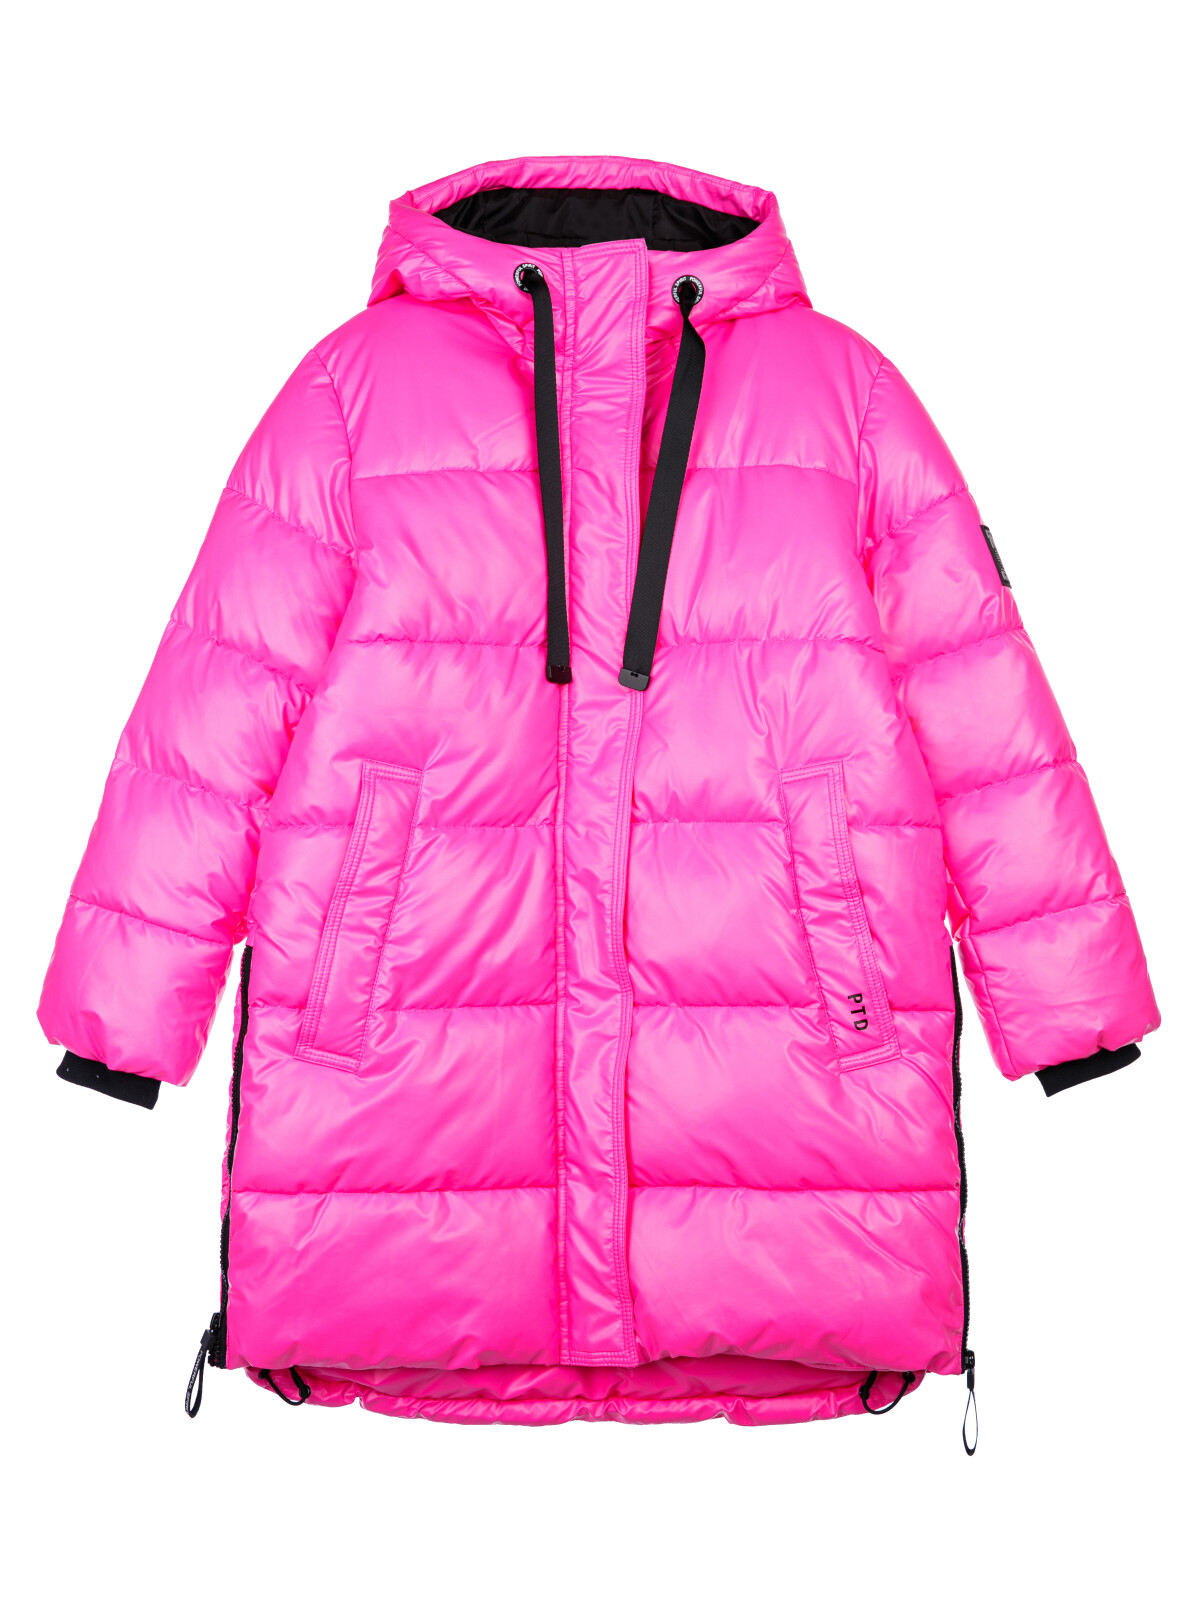 Куртка текстильная с полиуретановым покрытием для девочек PlayToday, фуксия,черный, 128